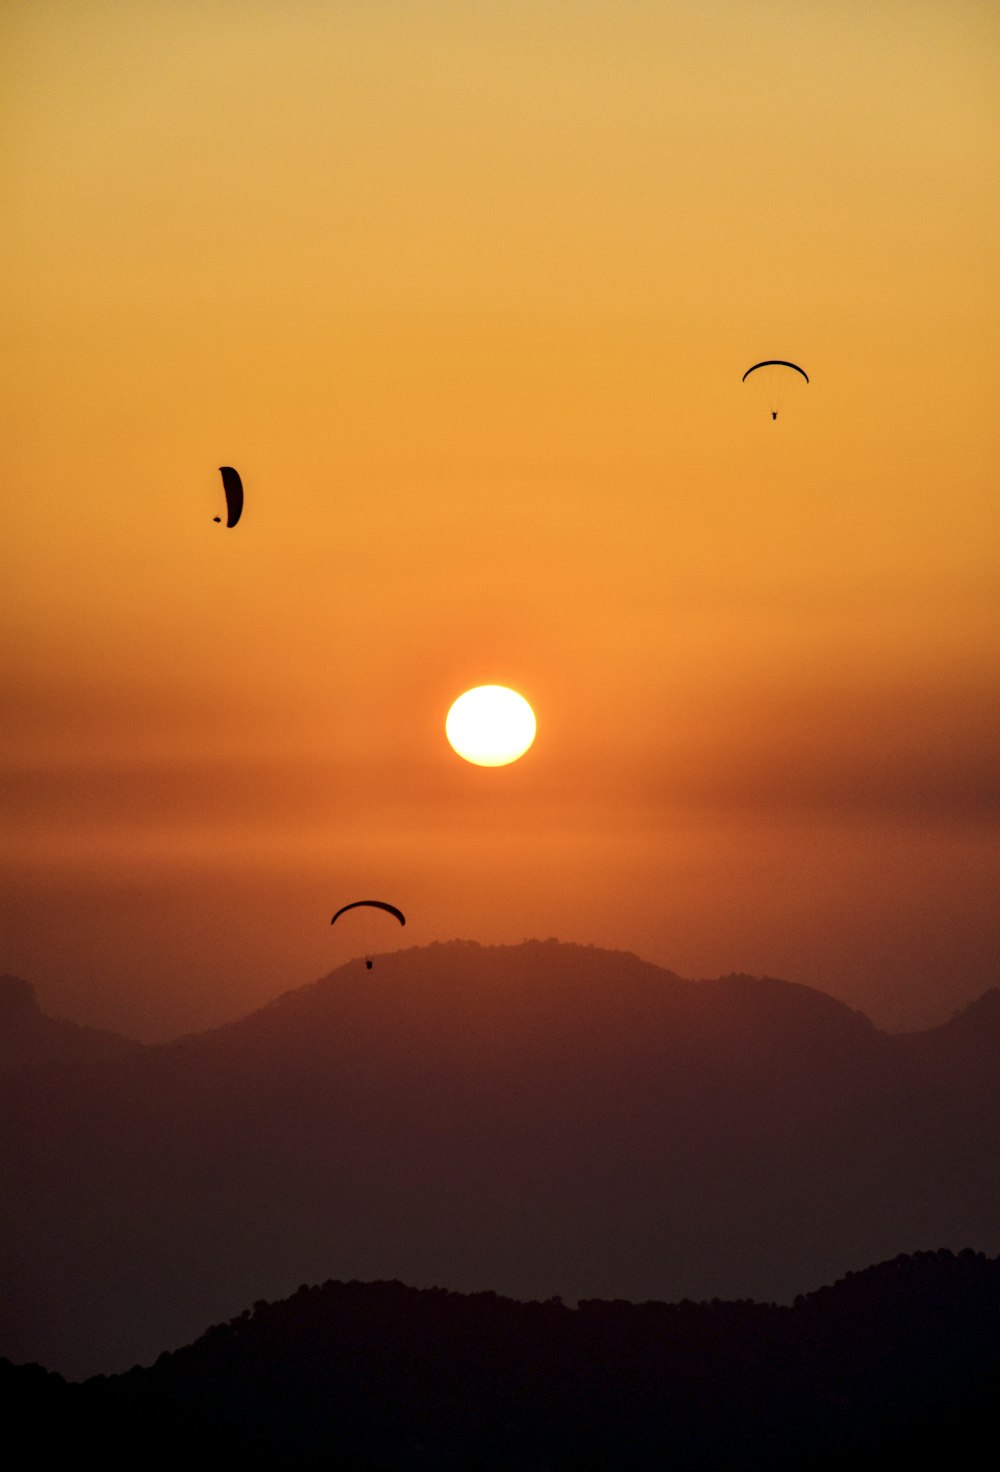 Un groupe d’oiseaux volant dans le ciel au coucher du soleil